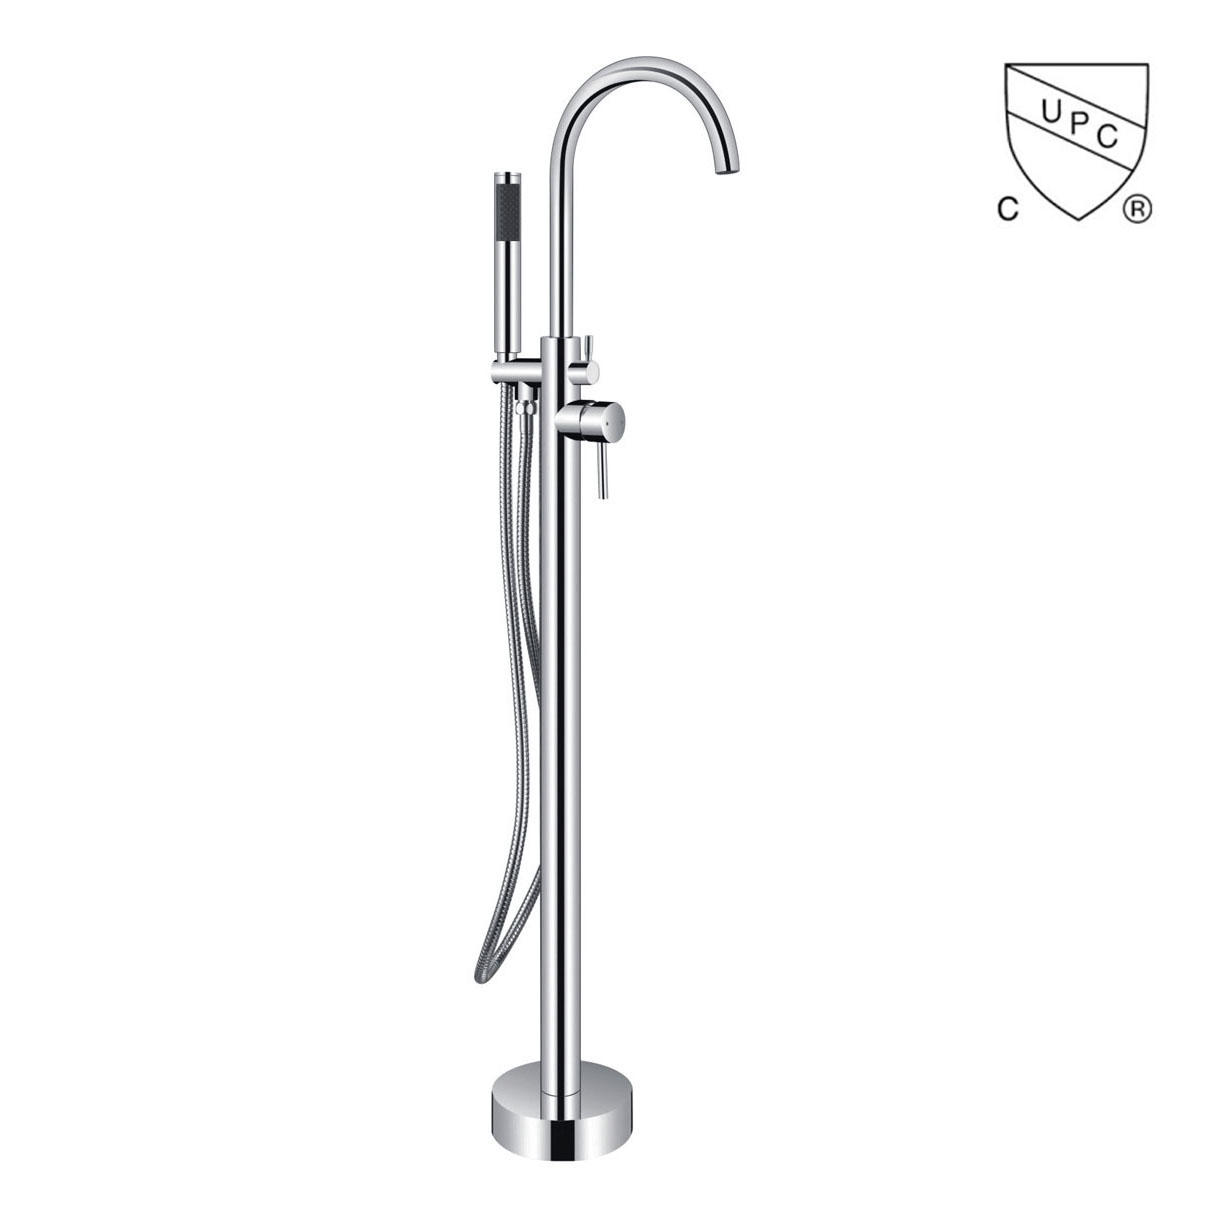 Y0118 UPC, robinet pentru cadă de sine stătător certificat CUPC, robinet pentru cadă cu montare pe podea;